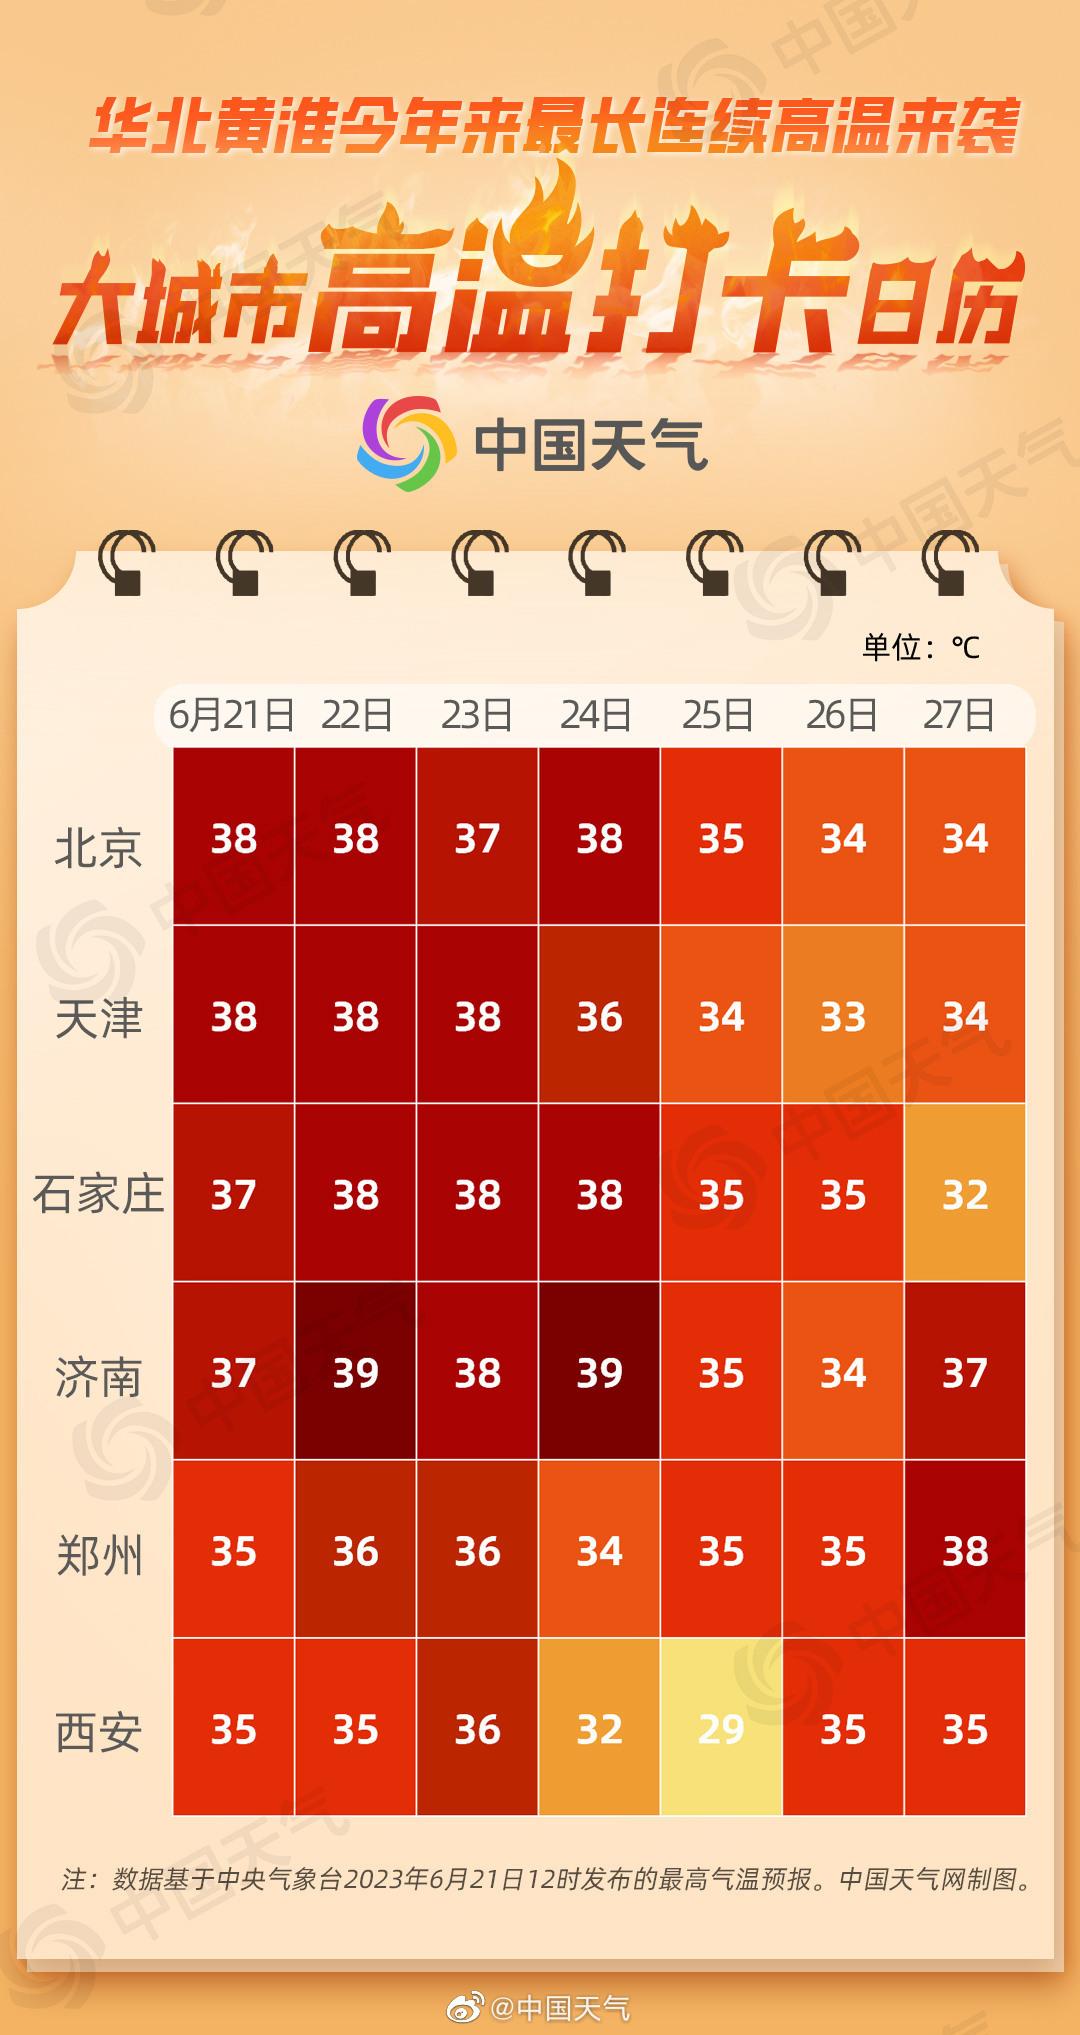 城市高温日历可以看出,石家庄,北京,济南等城市都将有5至6天连续高温